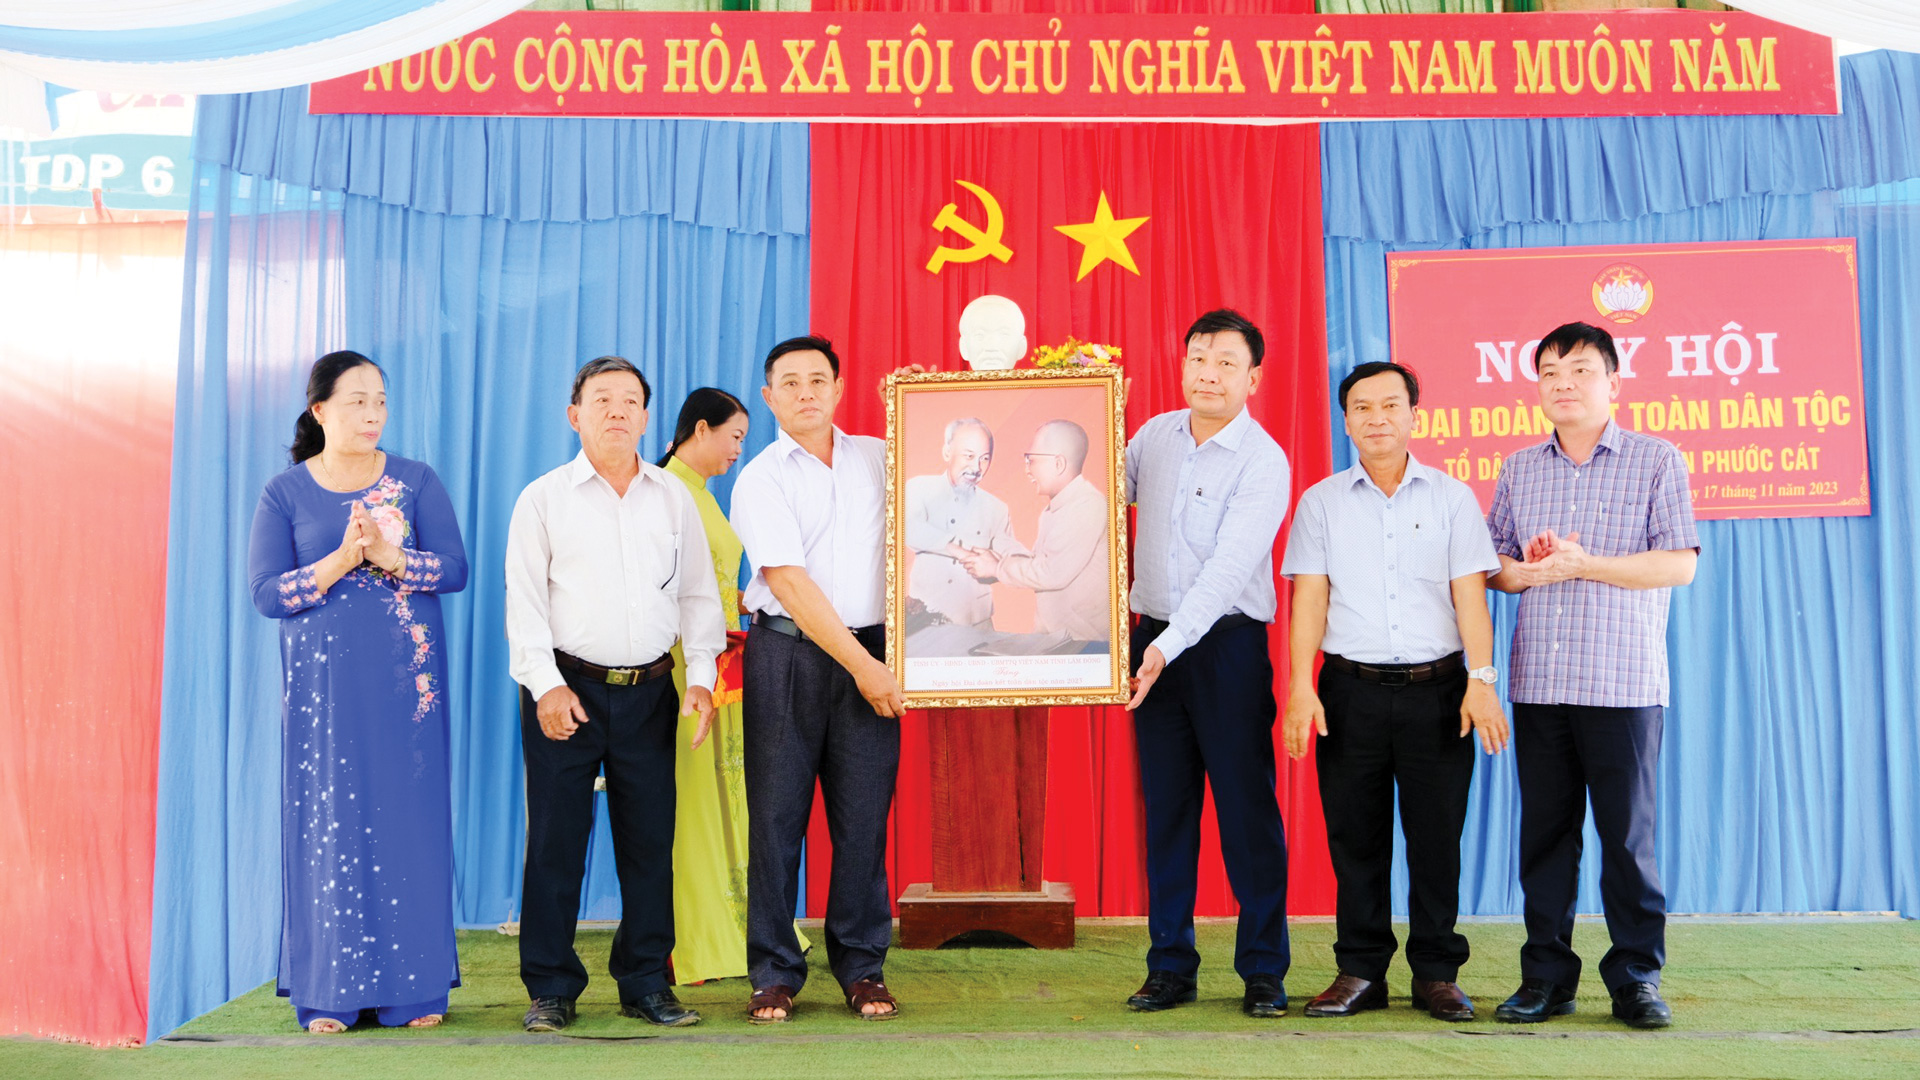 Đồng chí Bùi Thắng - Ủy viên Ban Thường vụ, Trưởng Ban Tuyên giáo Tỉnh ủy
trao tặng bức tranh Bác Hồ - Bác Tôn cho Nhân dân Tổ dân phố 7